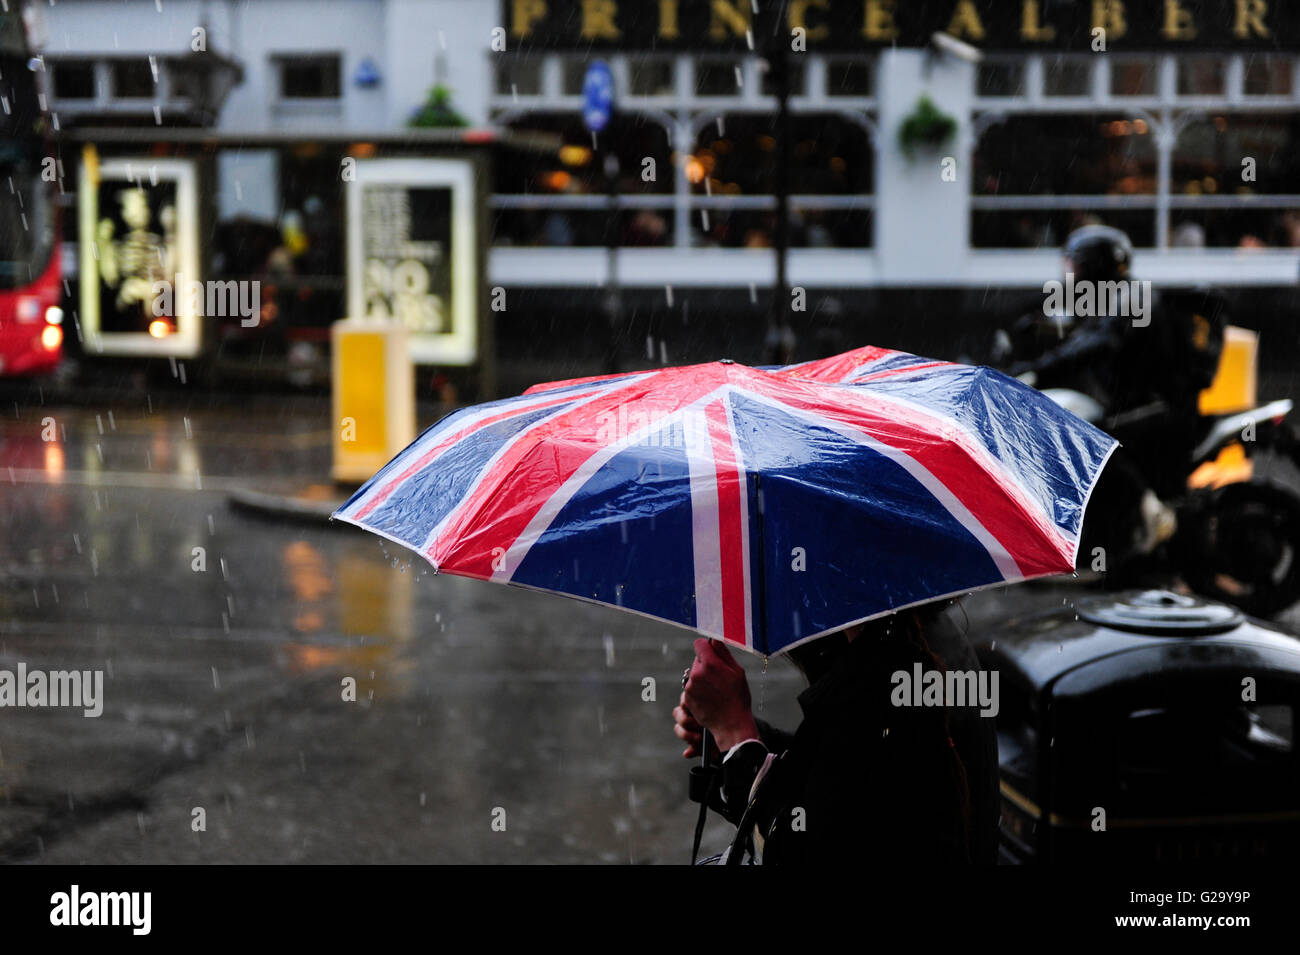 Großbritannien, London, Notting Hill, Fußgängerzone mit Regenschirm mit Union Jack-Flagge bei London Regen Stockfoto